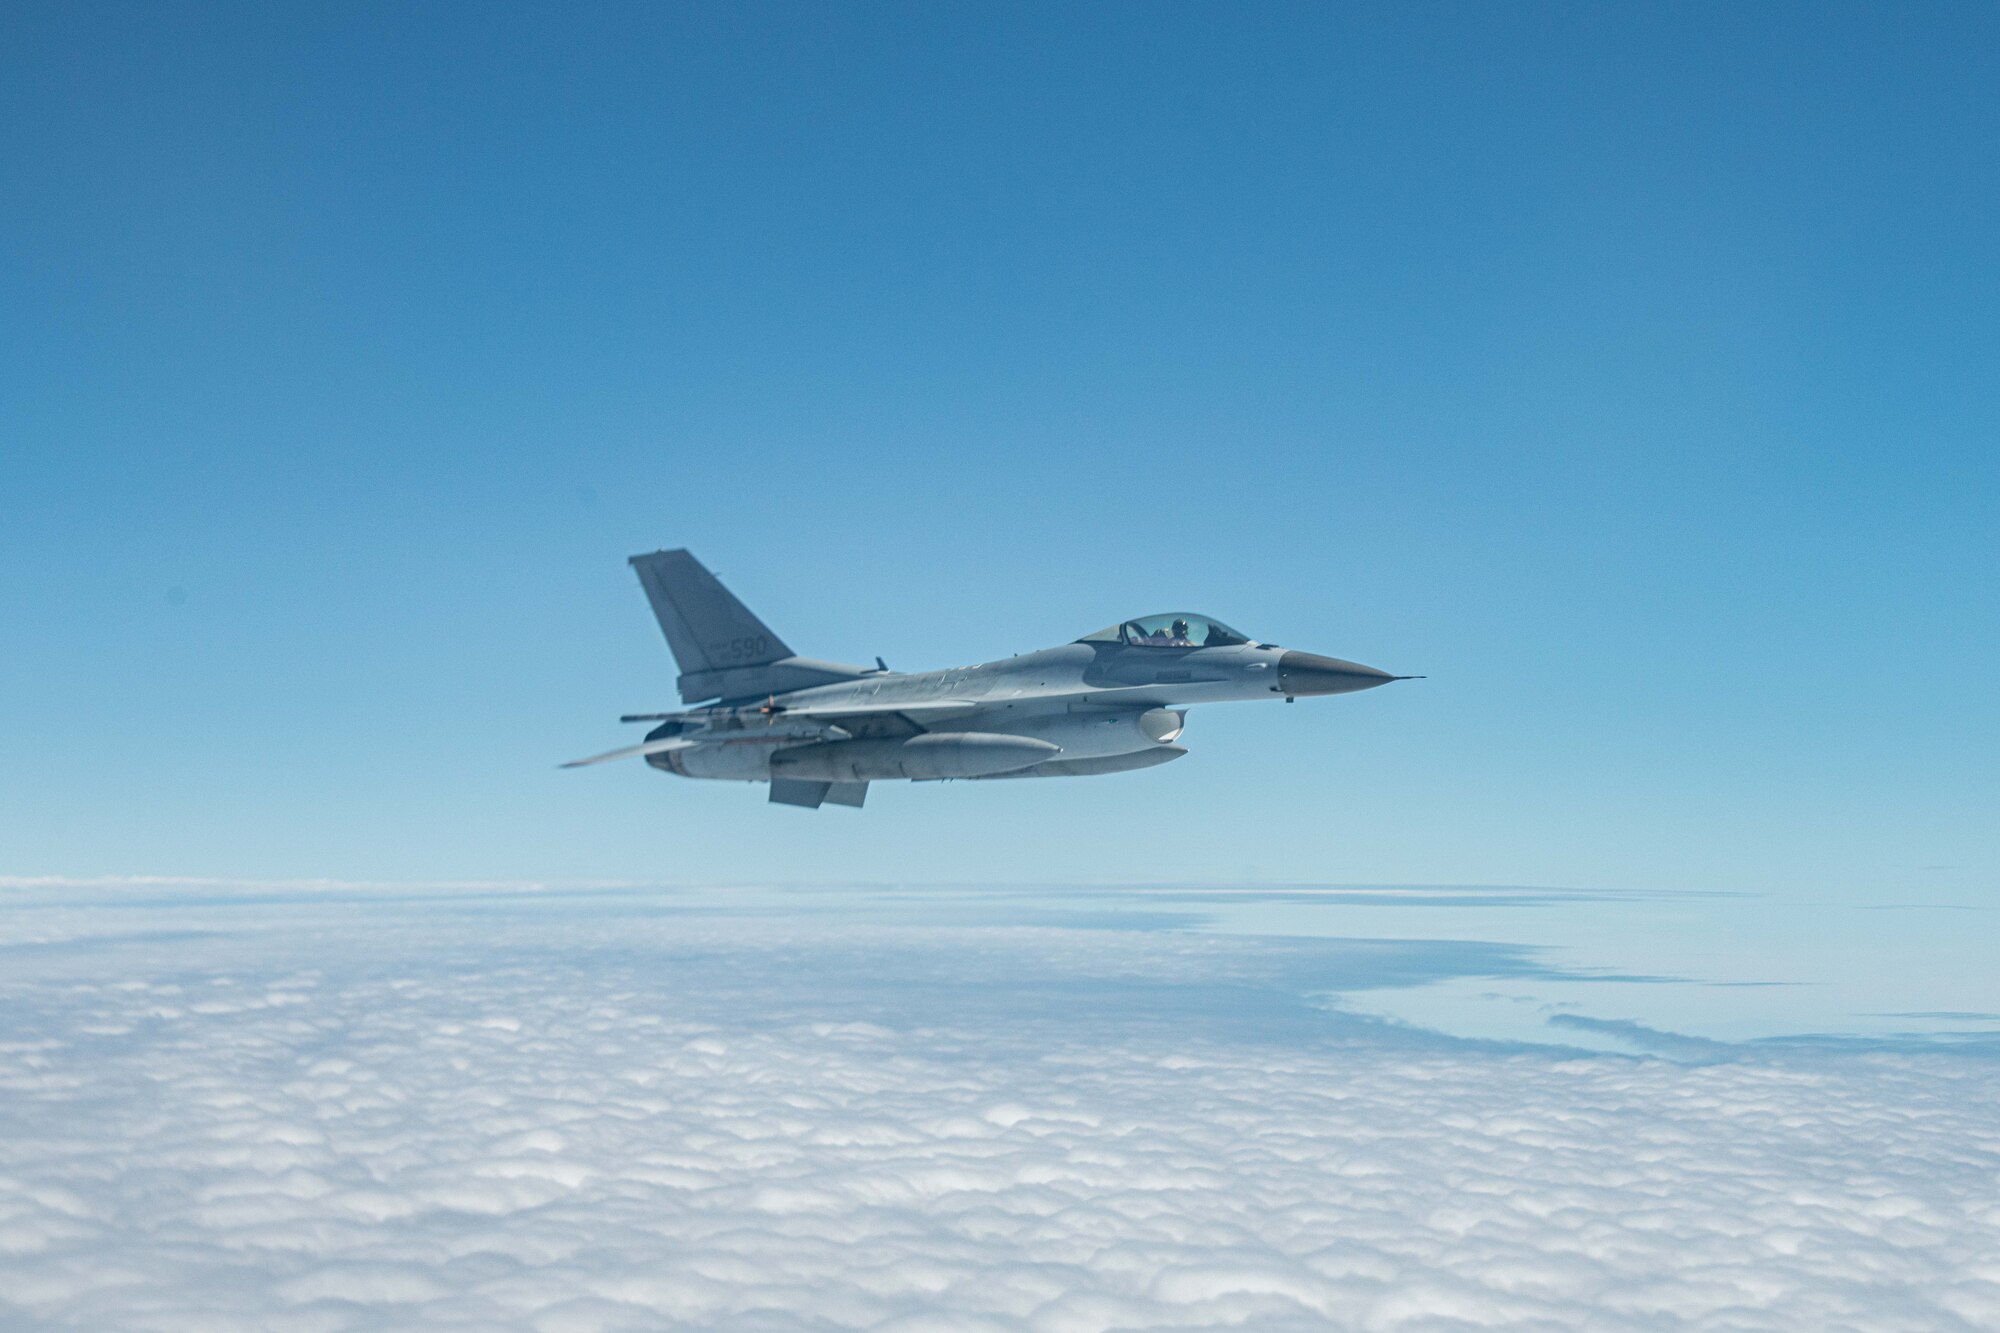 A Korean F-16 flies over clouds